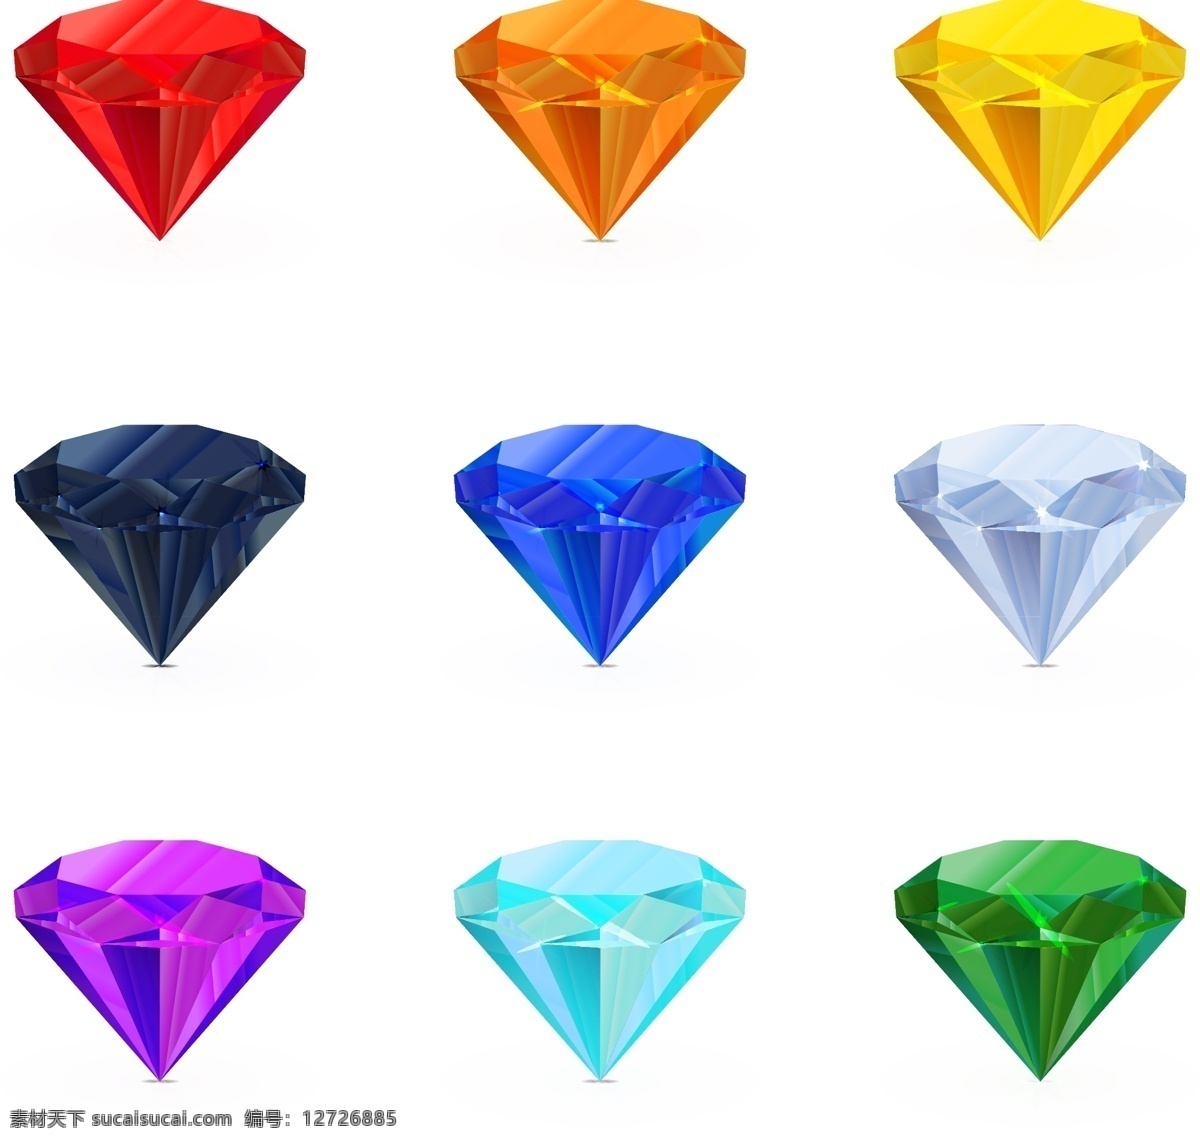 钻石珠宝首饰 蓝钻 红宝石 绿宝石 粉宝石 紫钻 卡通钻石 彩钻 珠宝服饰 生活百科